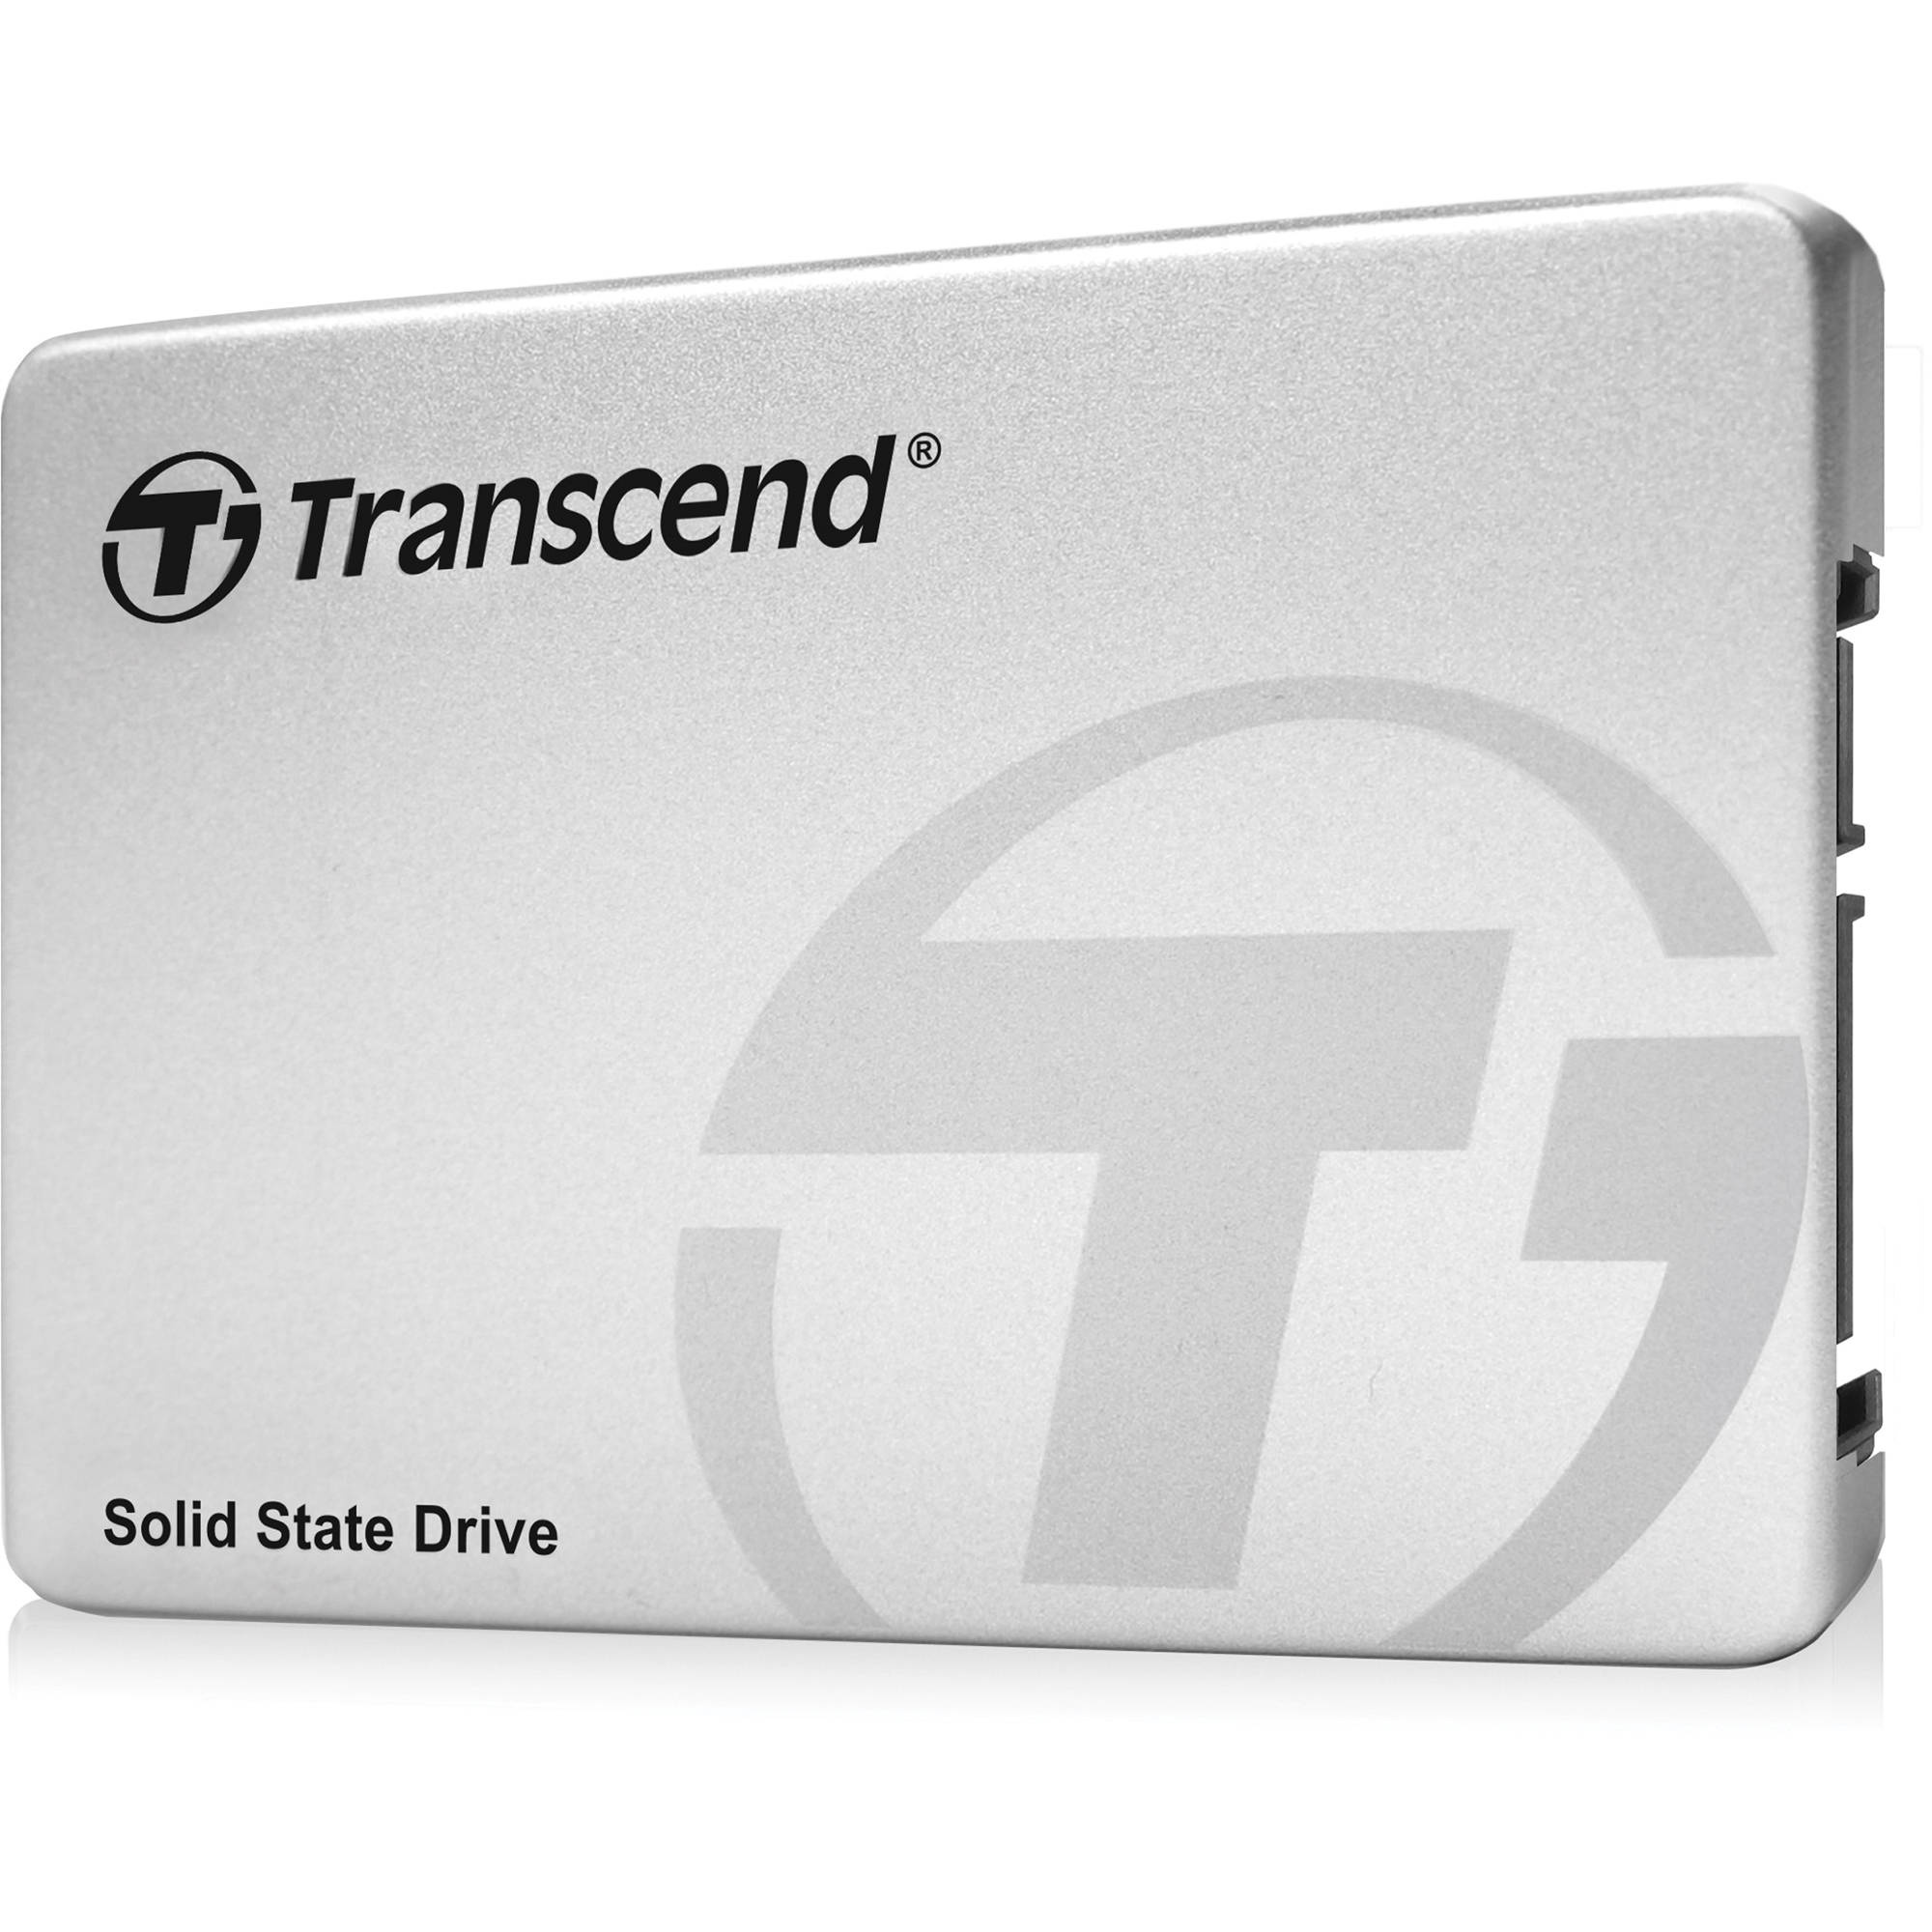 Transcend 128GB 2.5" SATA III SSD370S Internal SSD